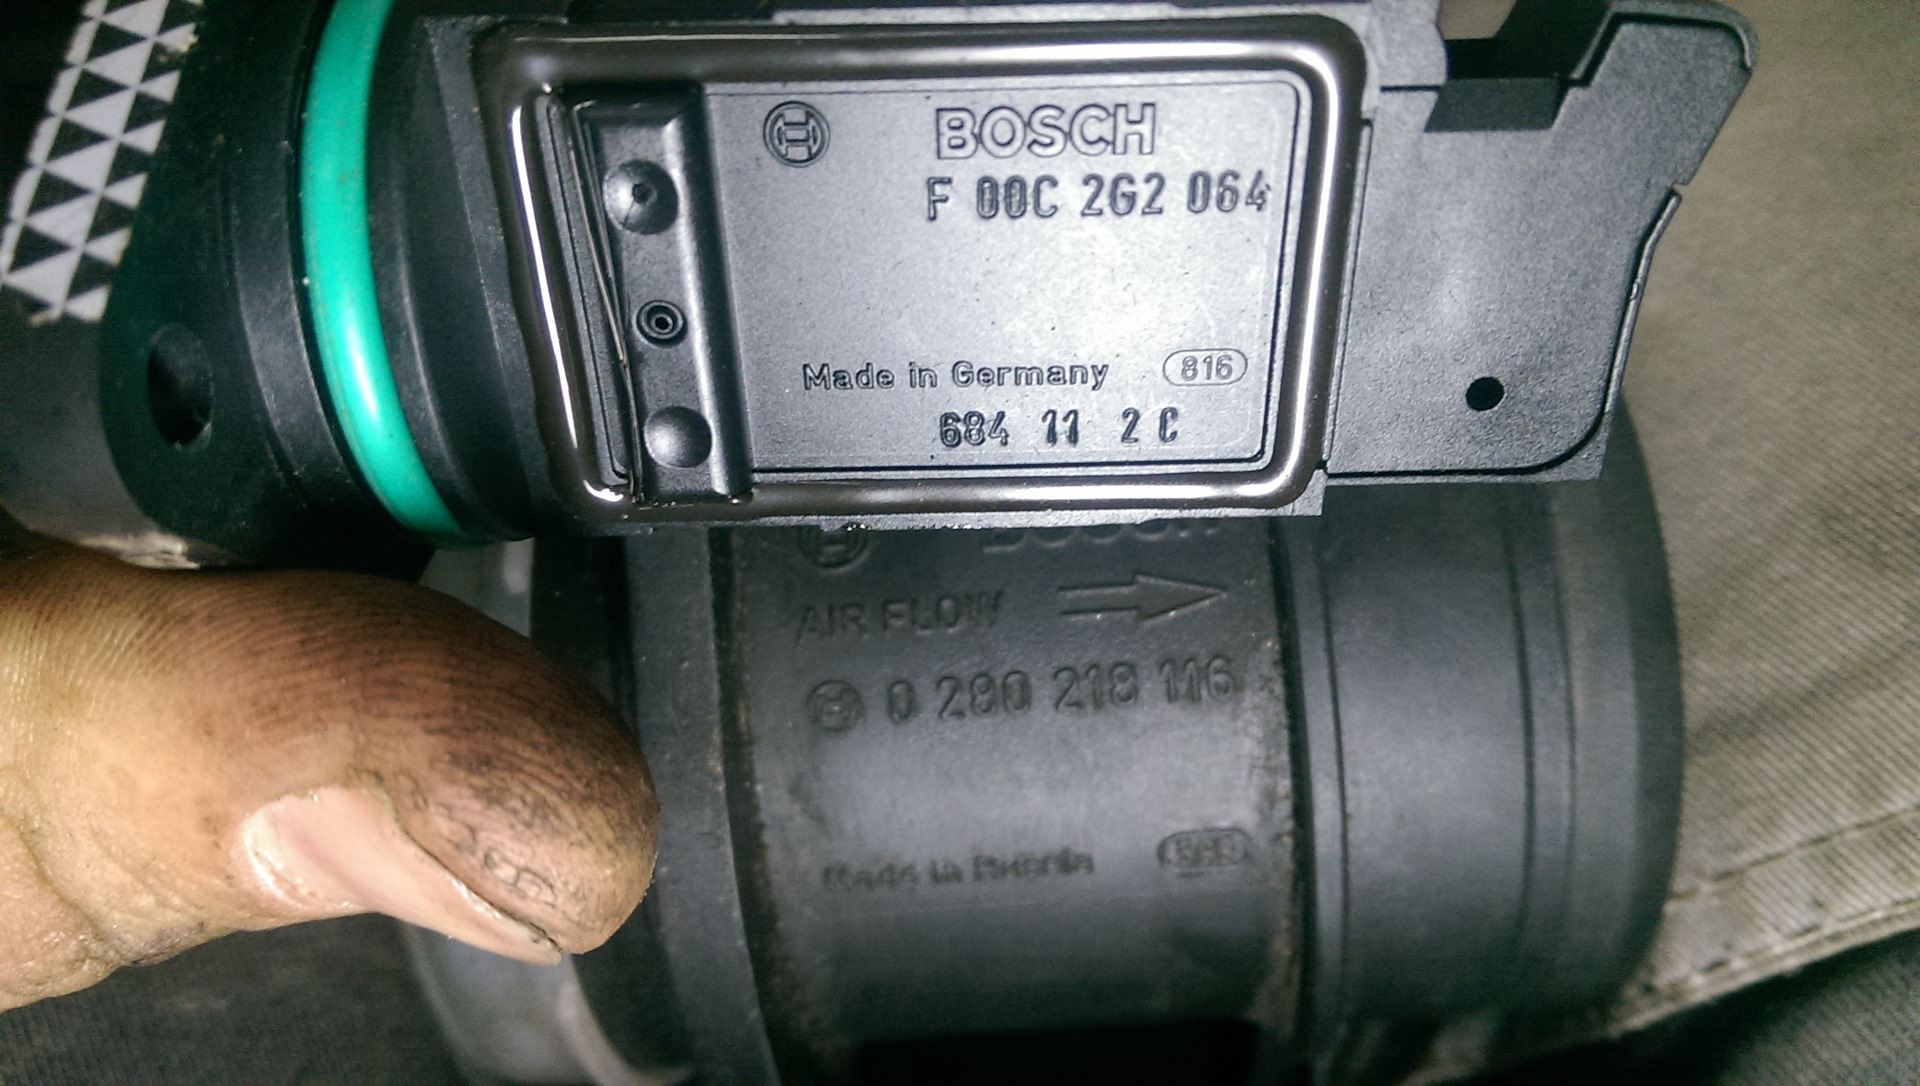 Новая датчик дмрв. ДМРВ Калина 1.6 8кл. ДМРВ Калина 2 16 клапанов. ДМРВ 116 Bosch. ДМРВ Bosch f 00c 2g2 060 Озон.